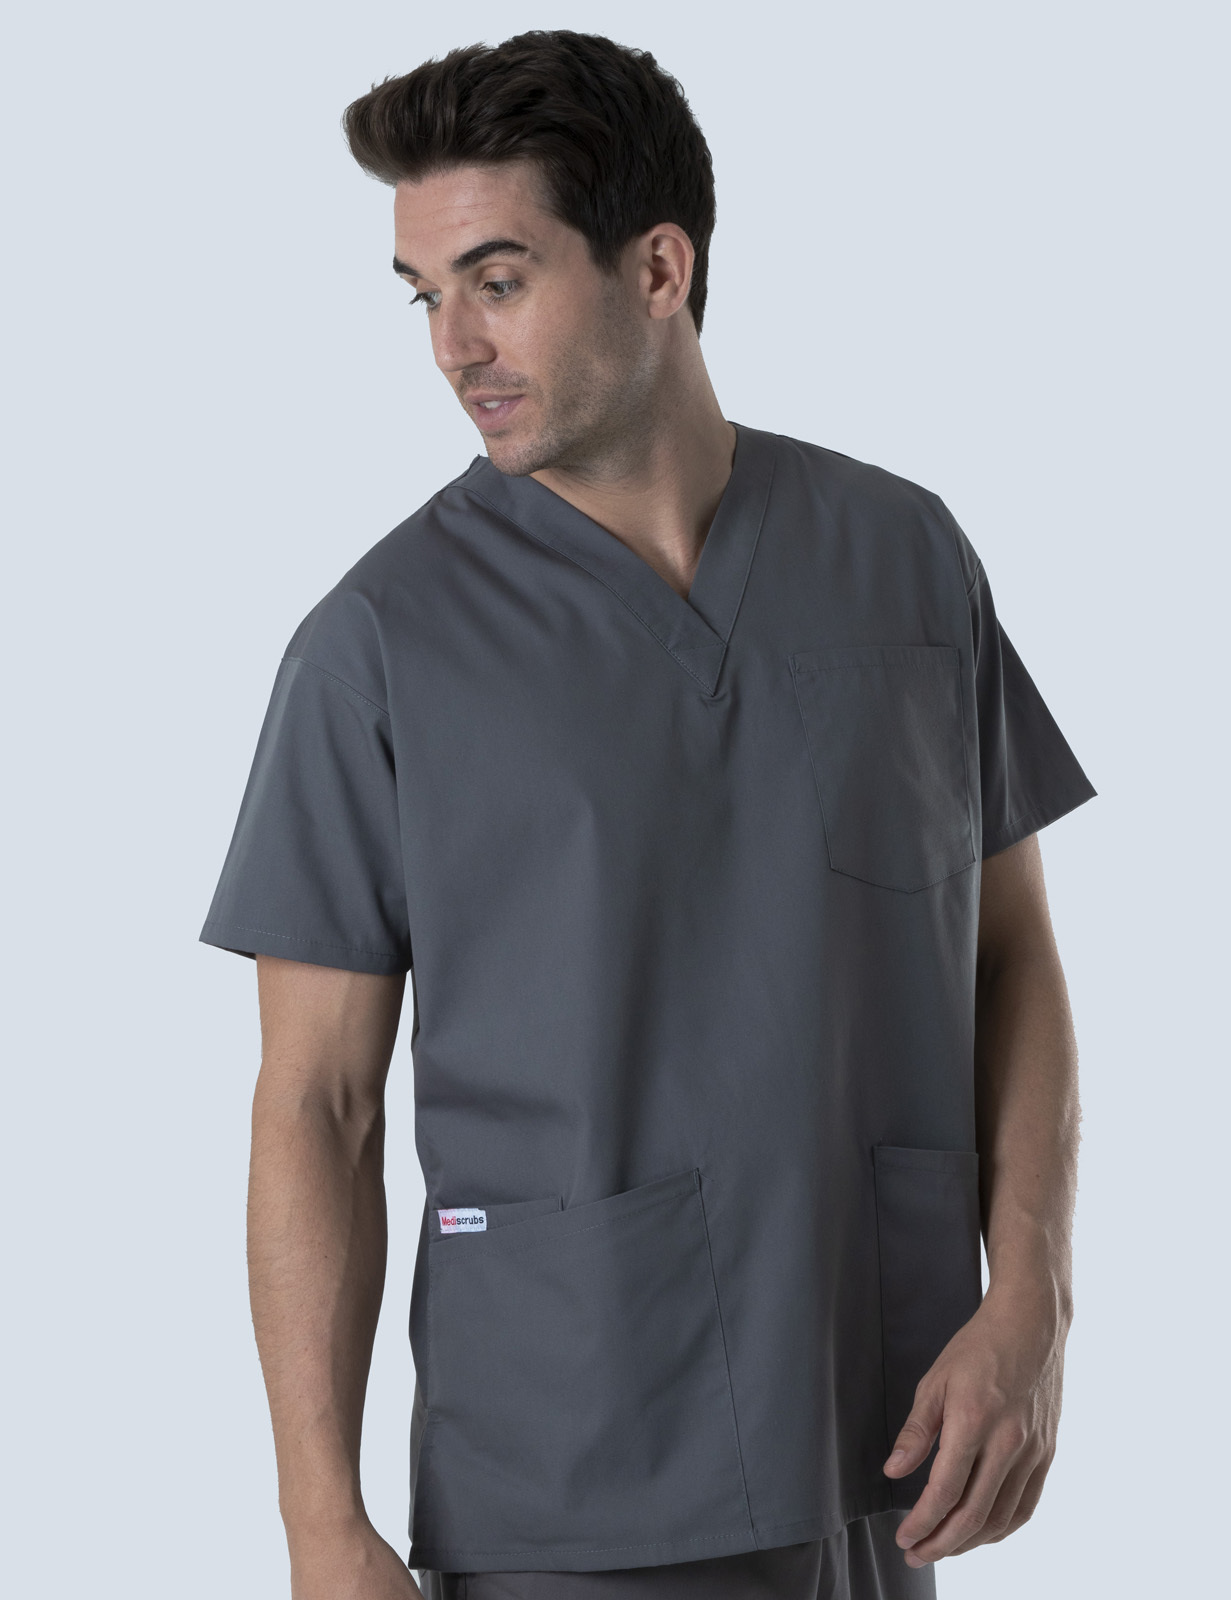 Queensland Children's Hospital Emergency Department Nurse Practitioner Uniform Top Bundle  (4 Pocket Top  in Steel Grey  incl Logos)